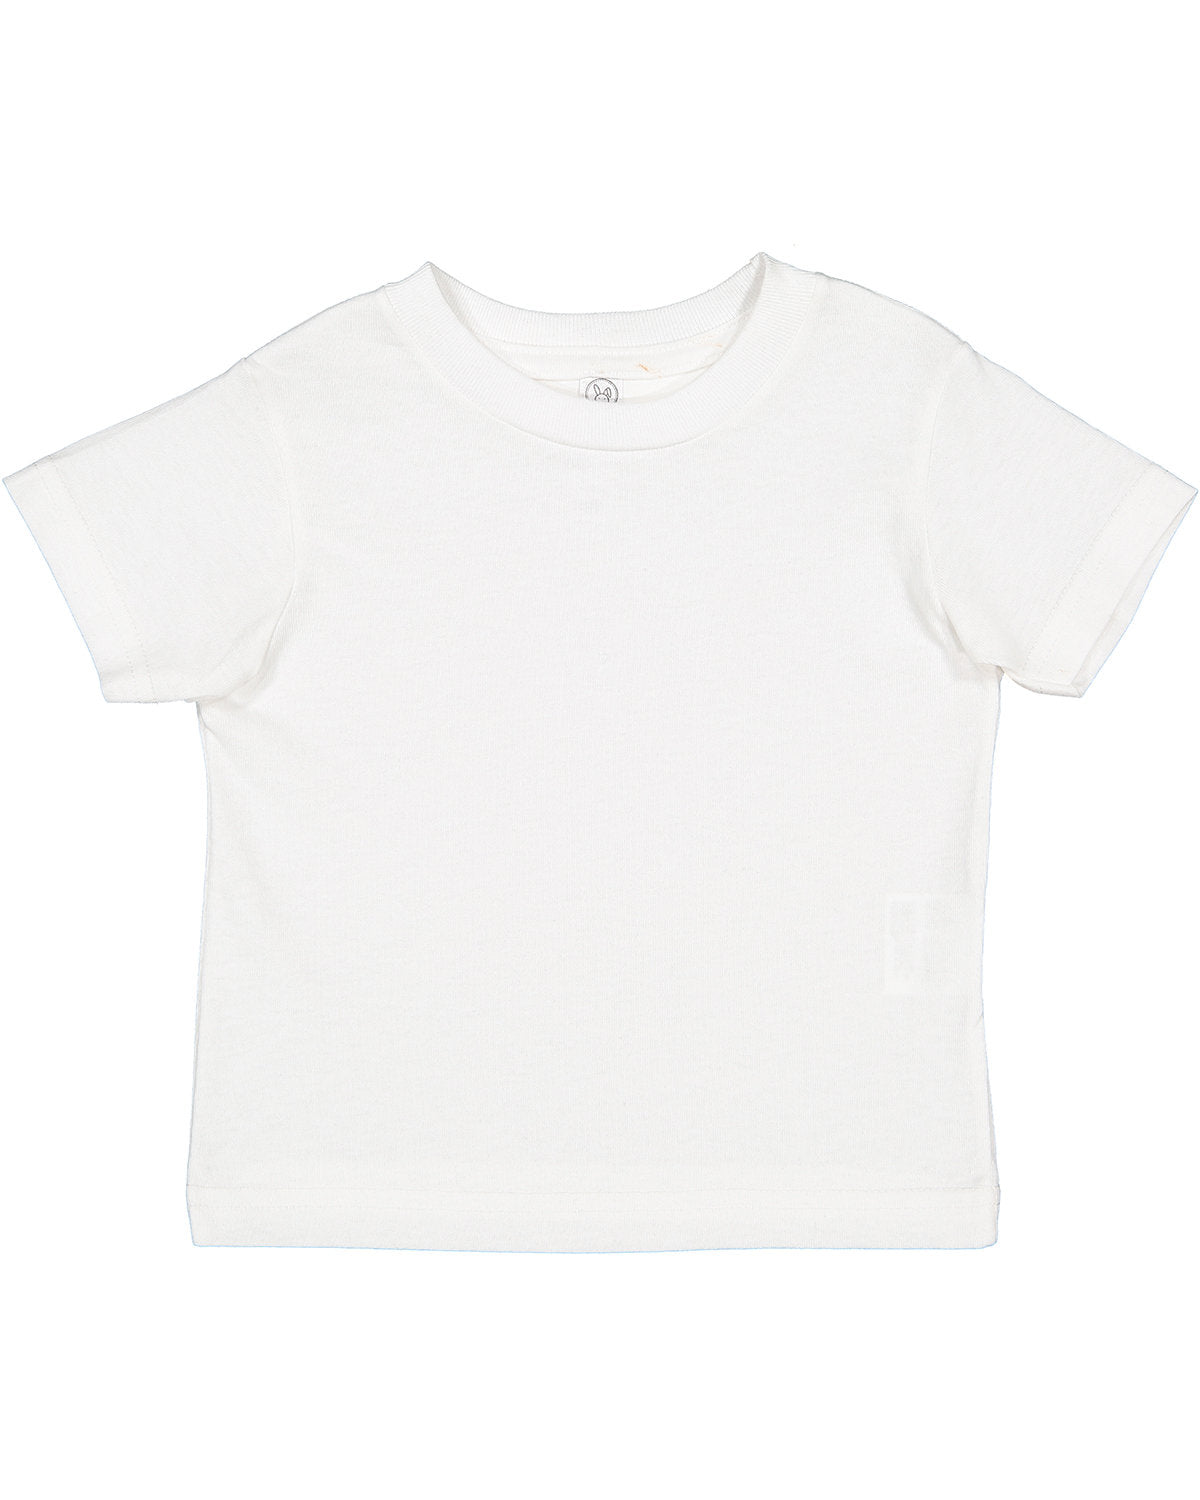 Rabbit Skins Toddler Cotton Jersey T-Shirt 2T / White